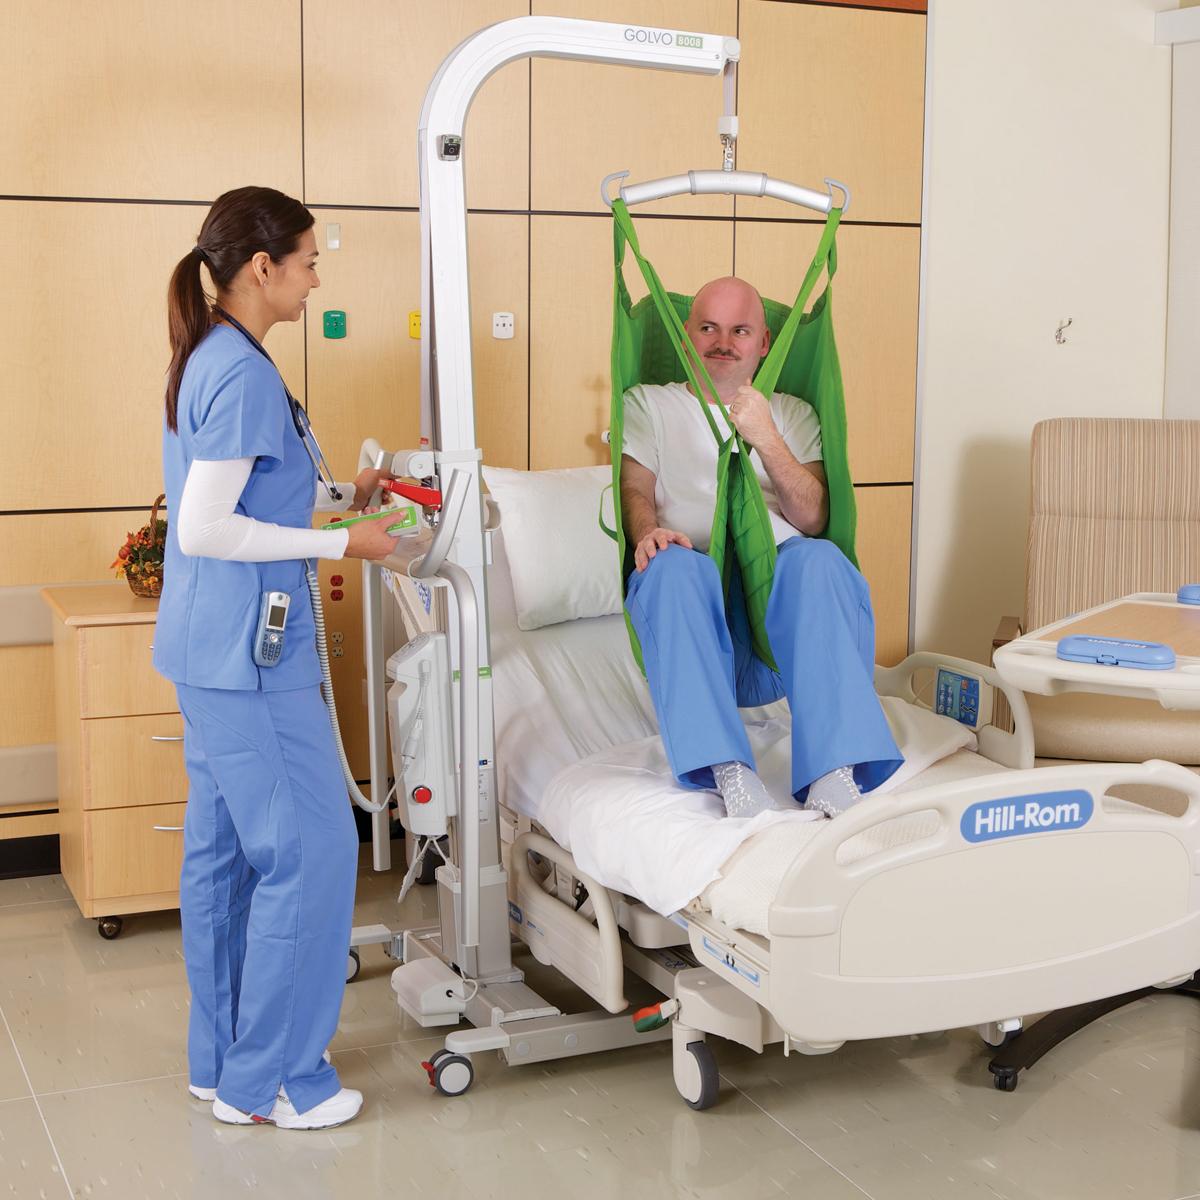 Un clinico solleva un paziente da un letto ospedaliero con il sollevatore mobile Golvo